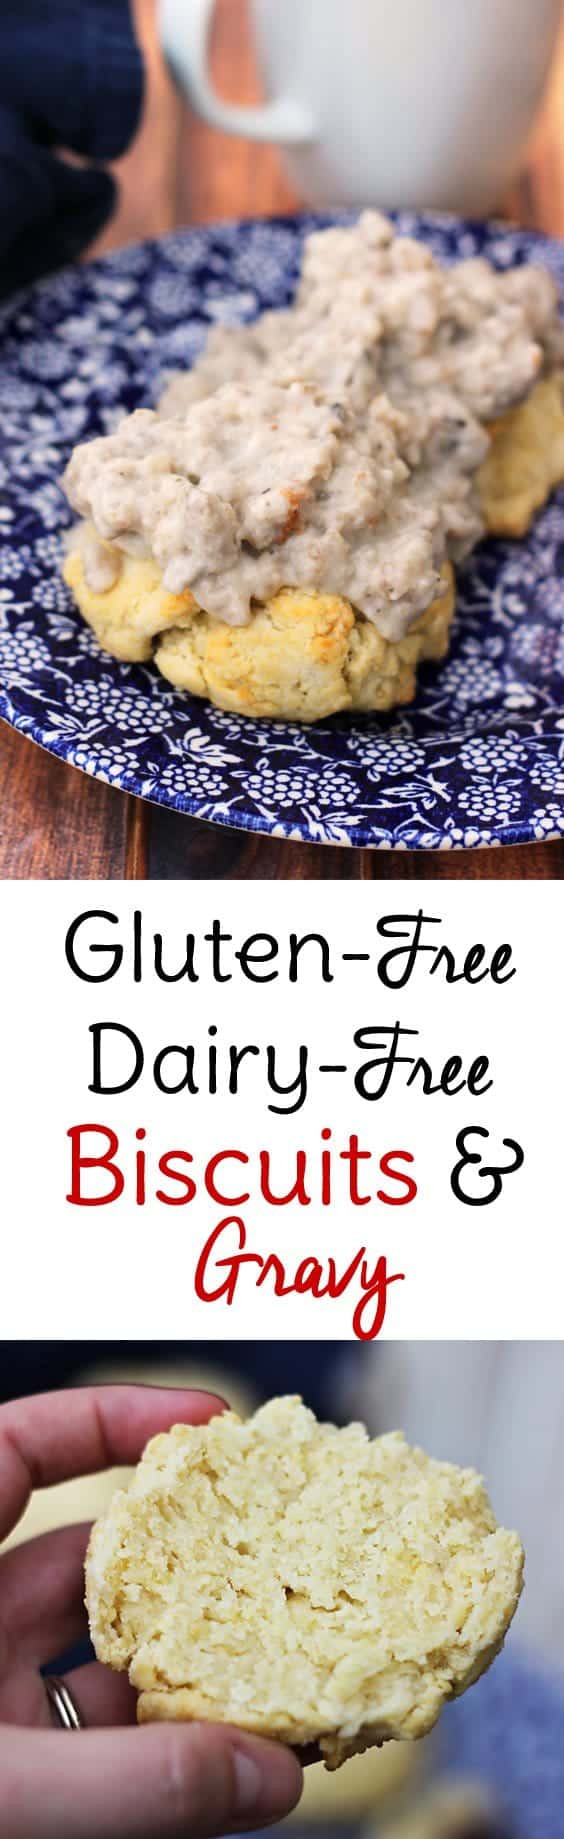 Gluten Free Dairy Free Gravy
 Gluten Free Biscuits and Gravy Recipe